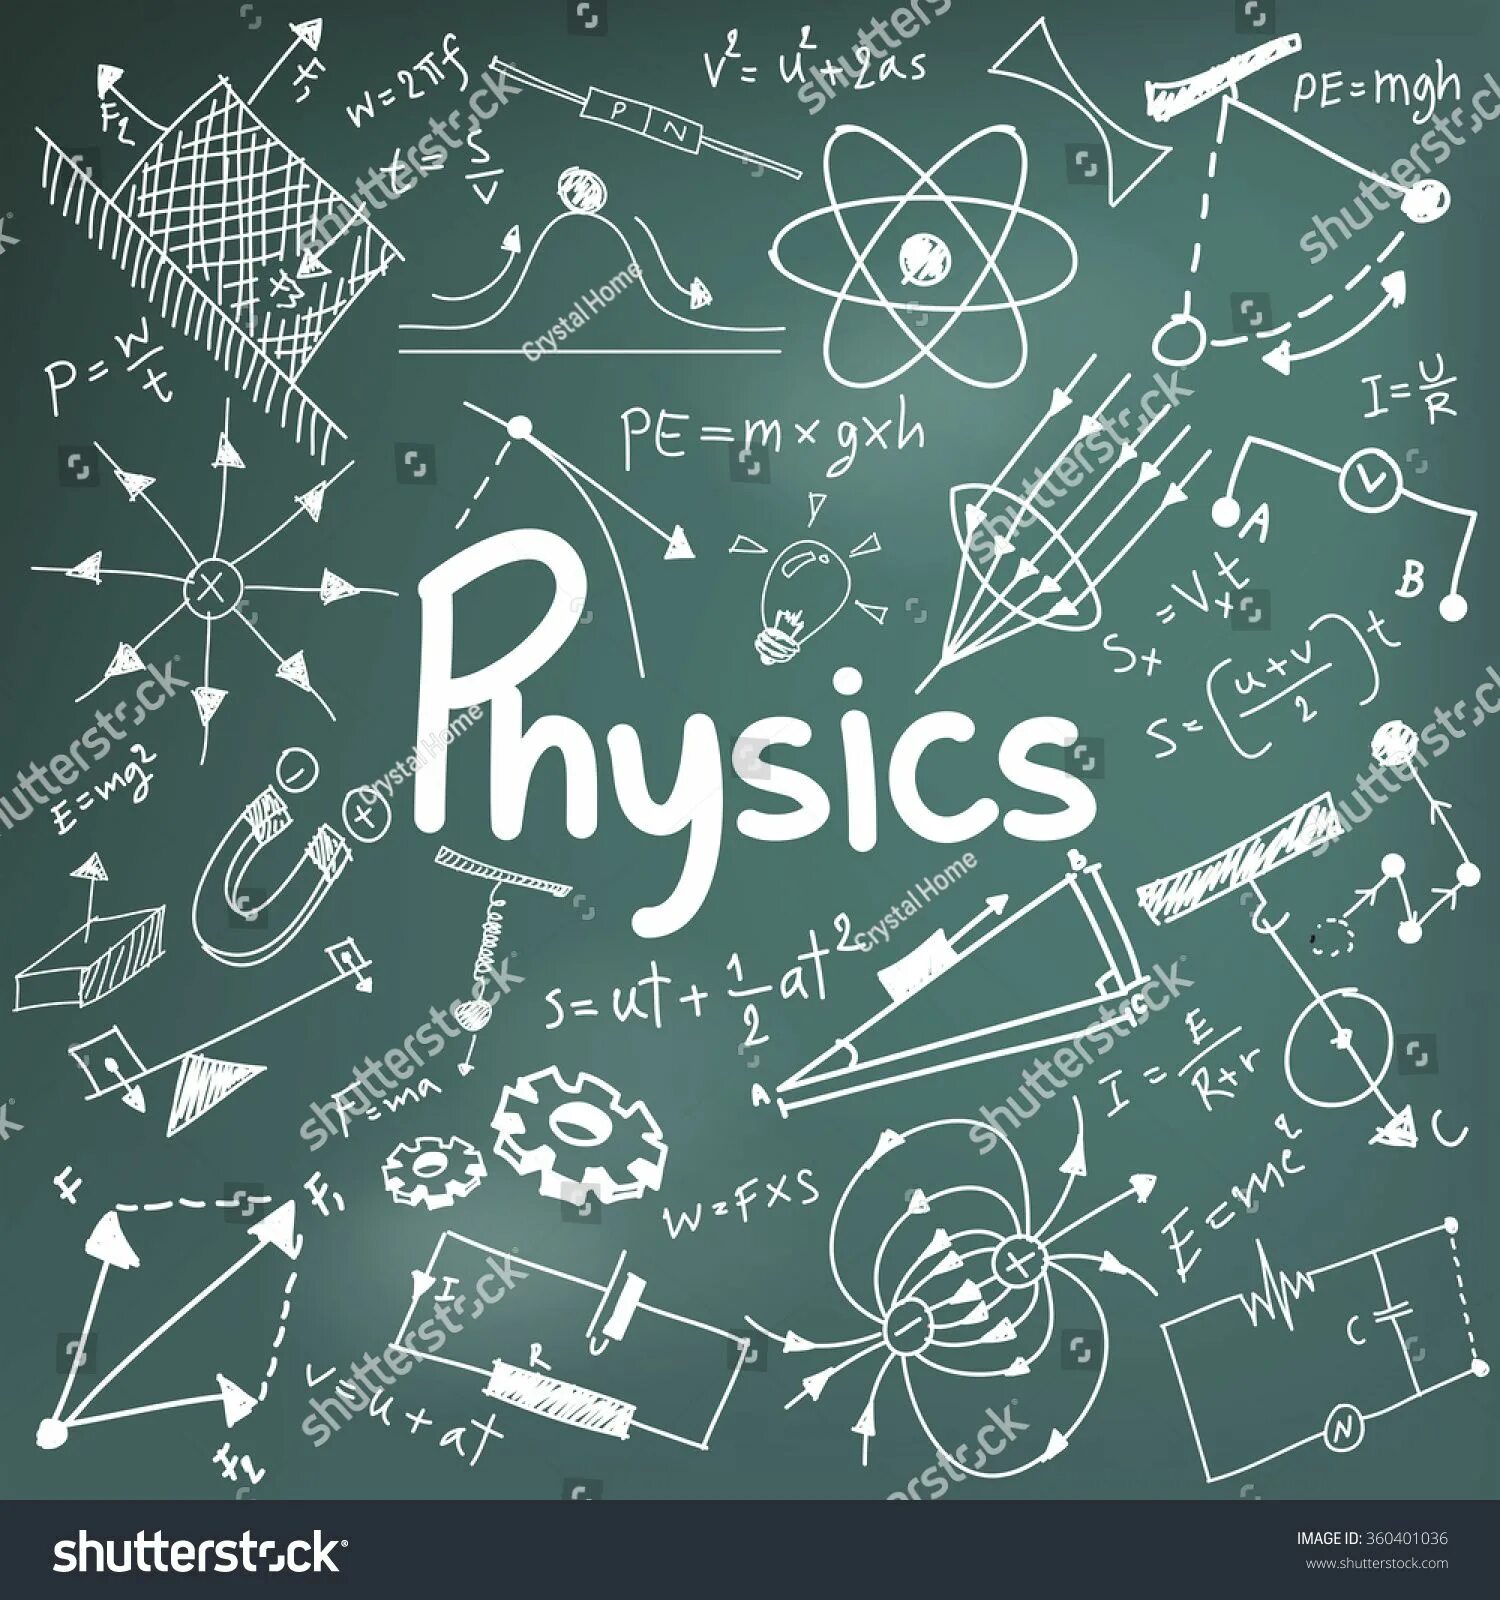 Physical science. Физика. Физика картинки. Физика рисунки. Рисунки для физики.